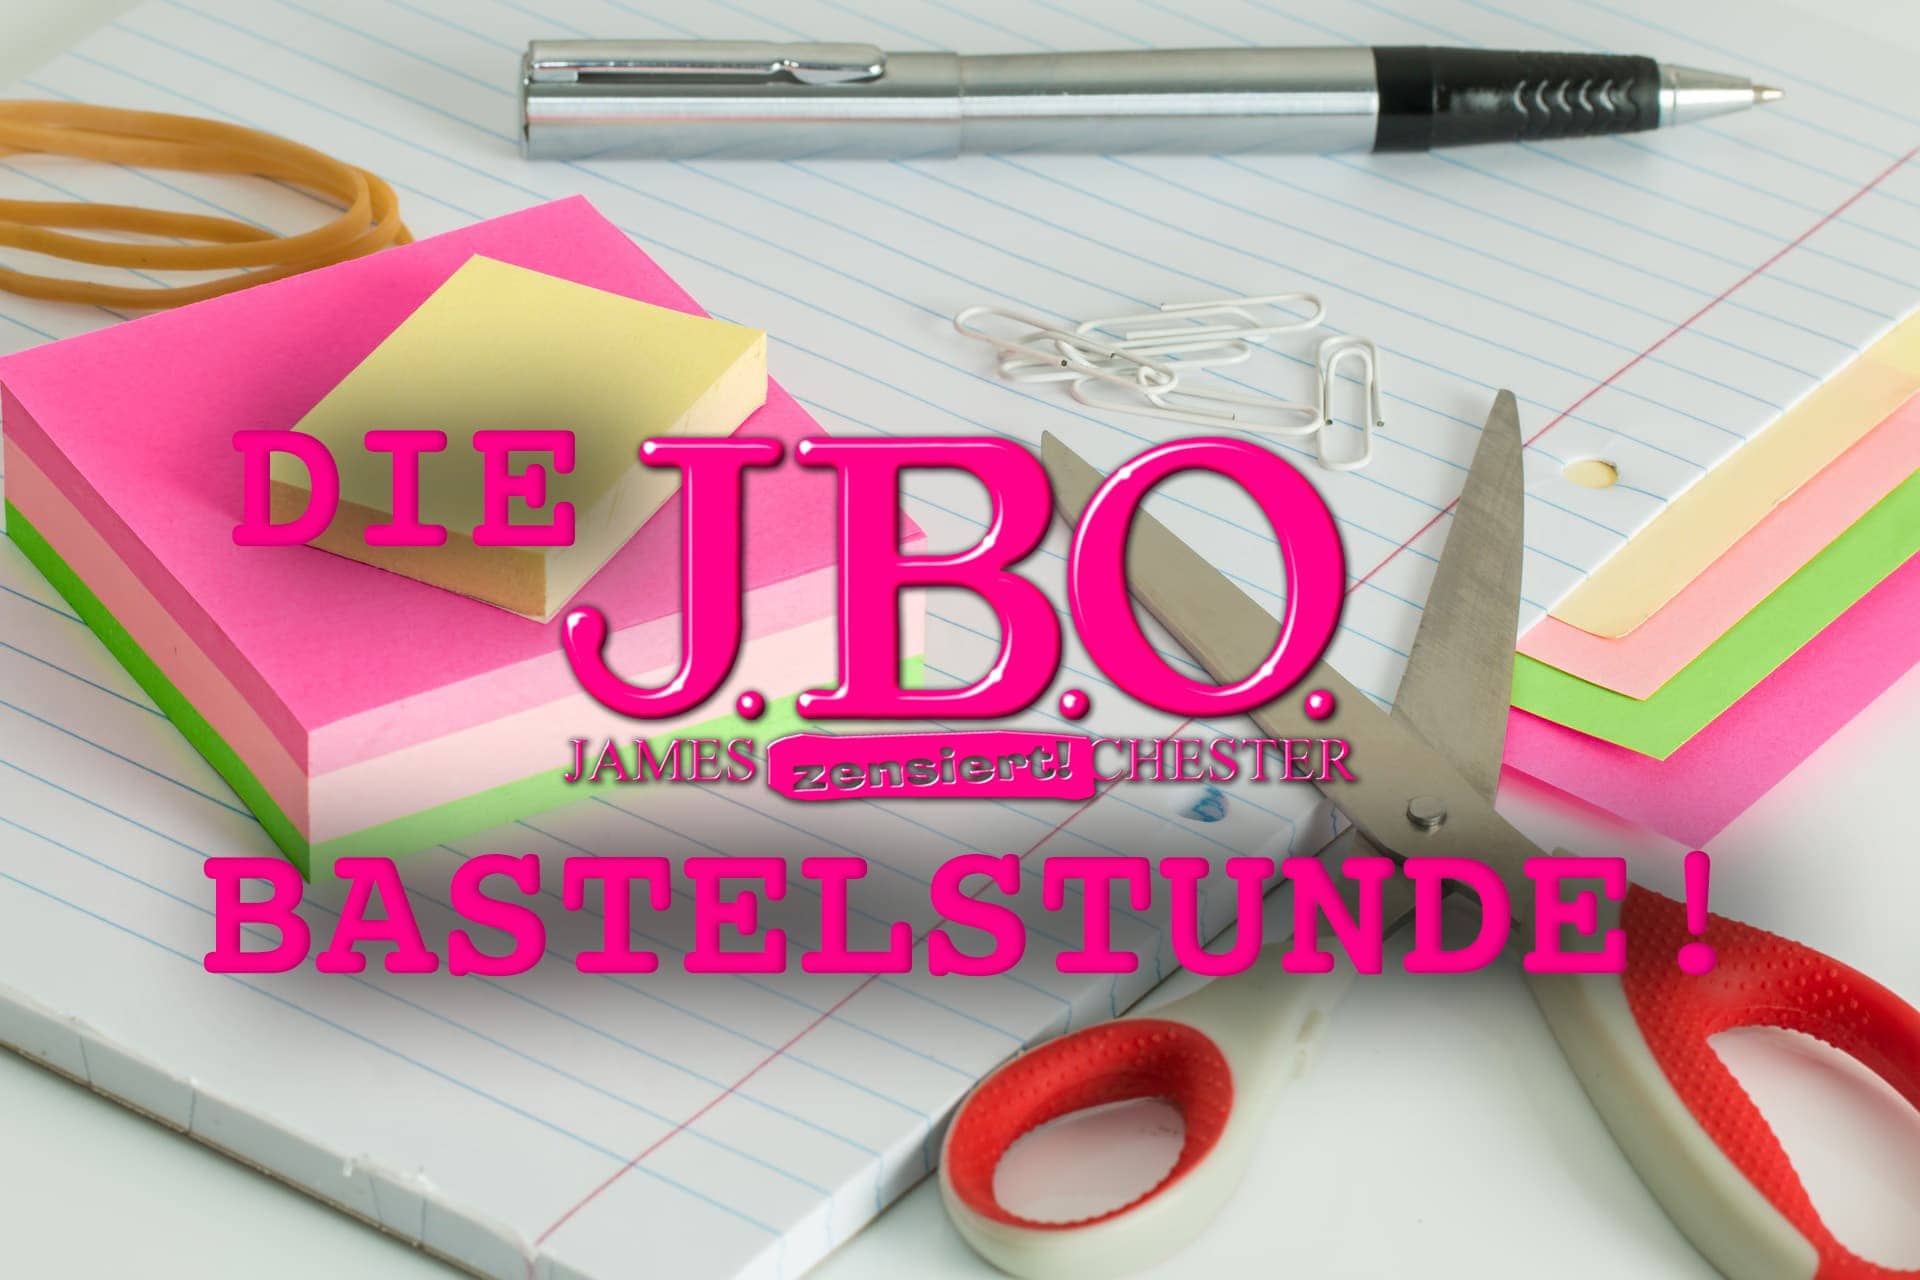 www.jbo.de